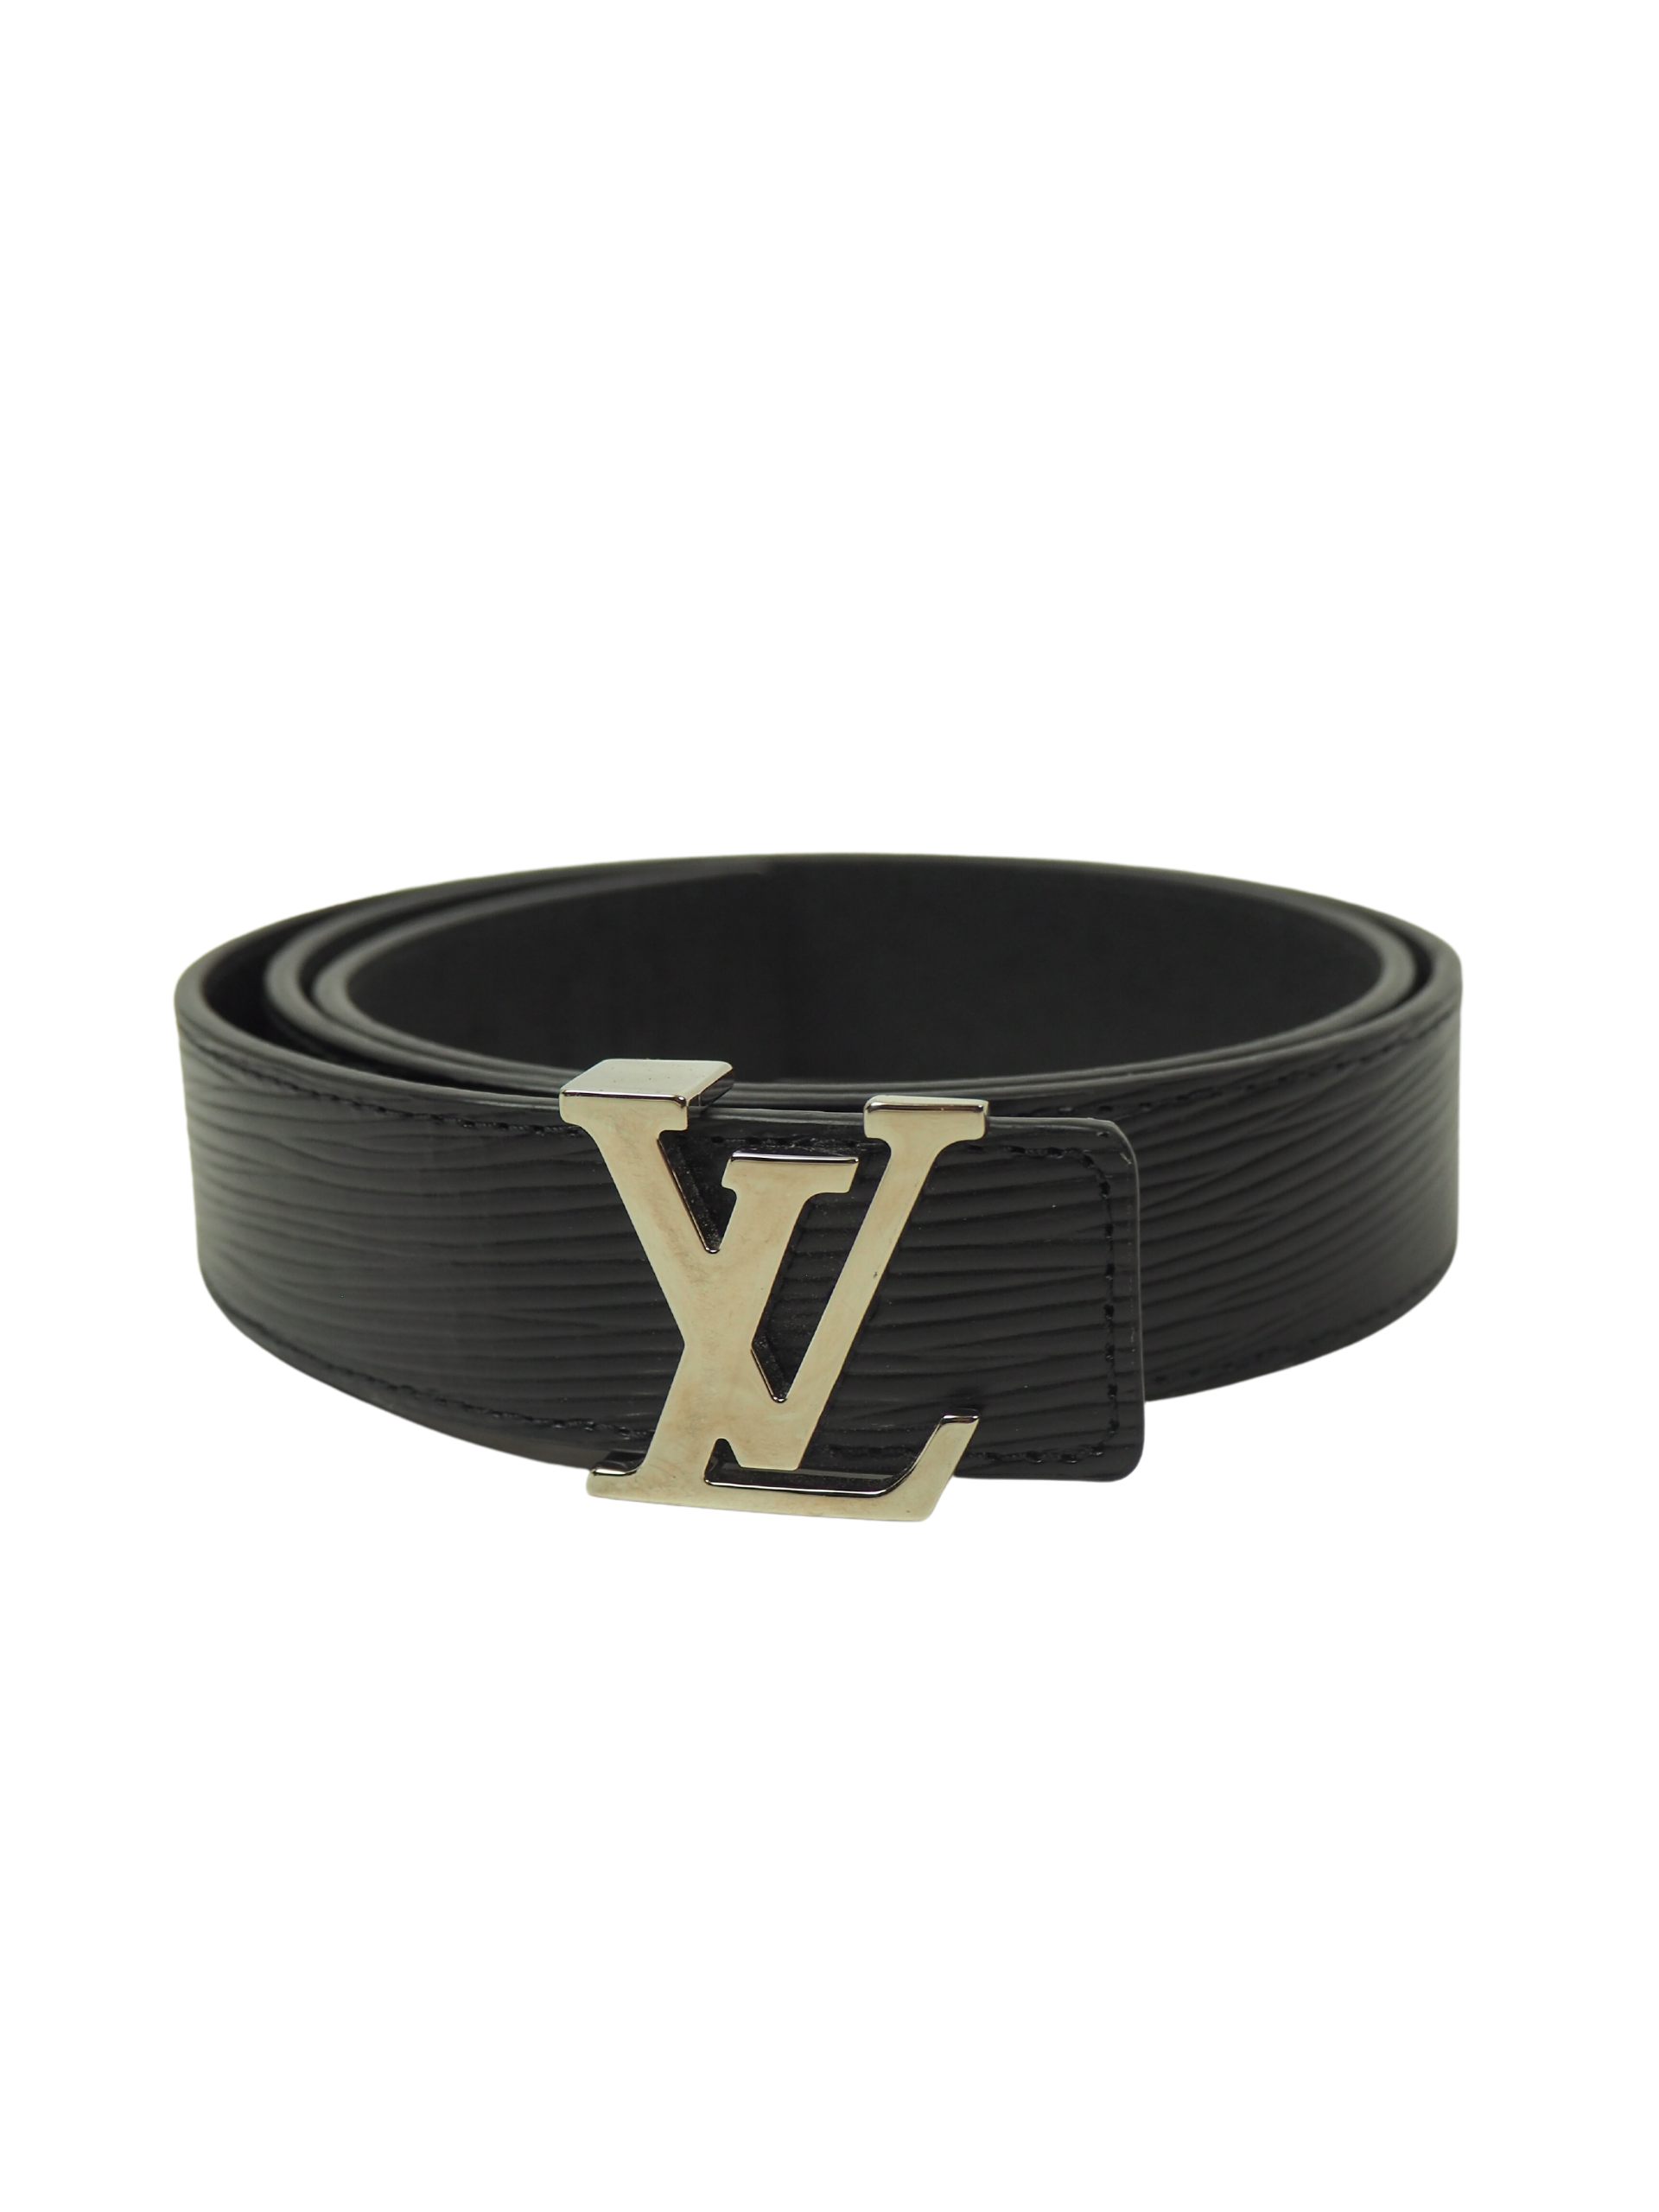 Louis Vuitton Black Epi Leather Belt Size 80-32 – Luxeparel